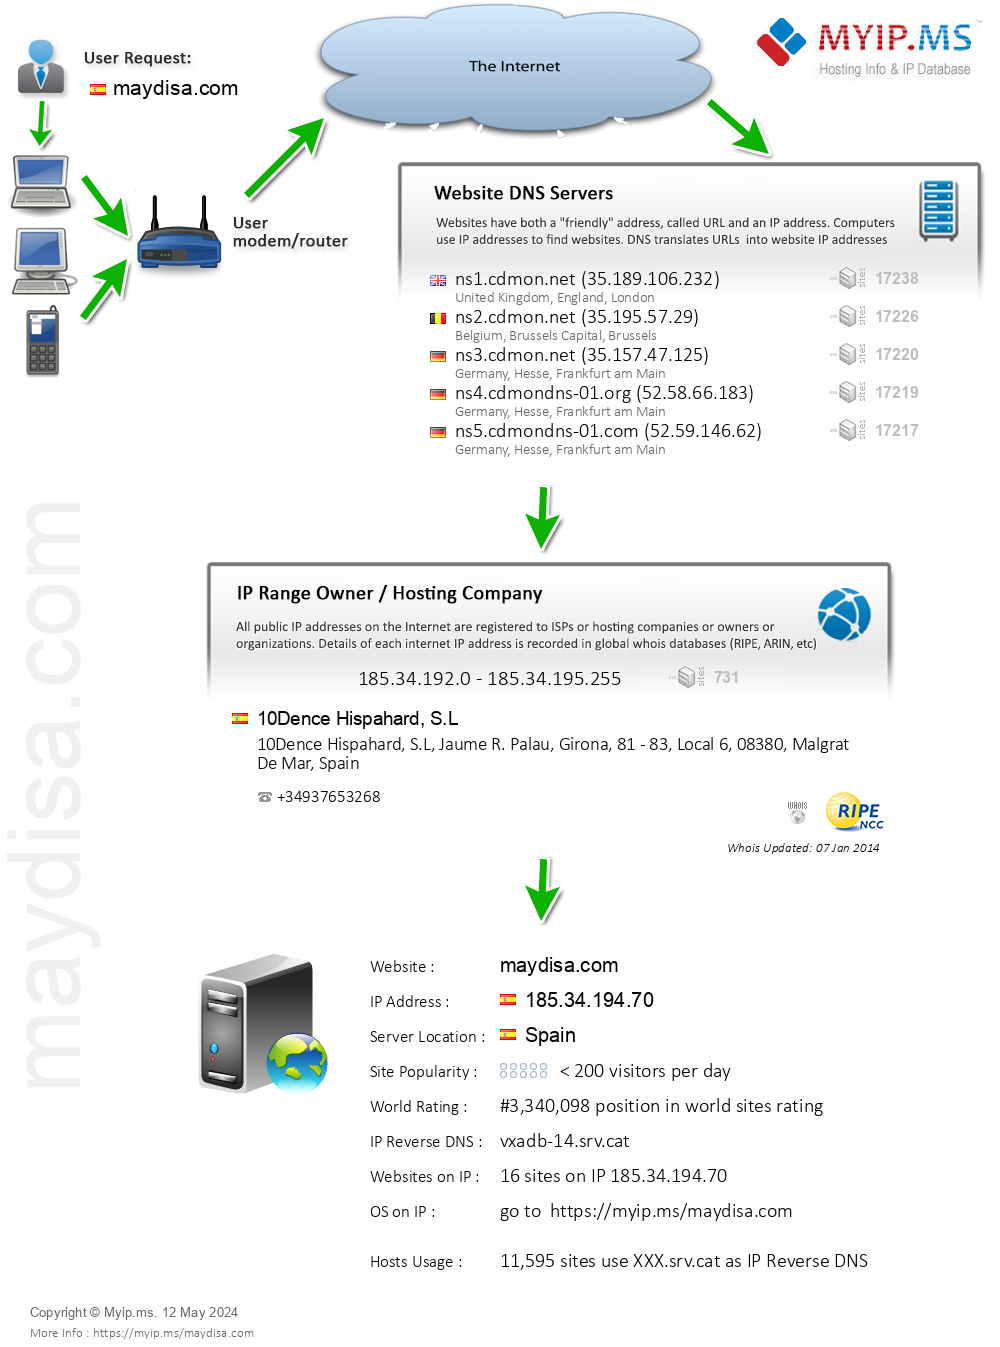 Maydisa.com - Website Hosting Visual IP Diagram